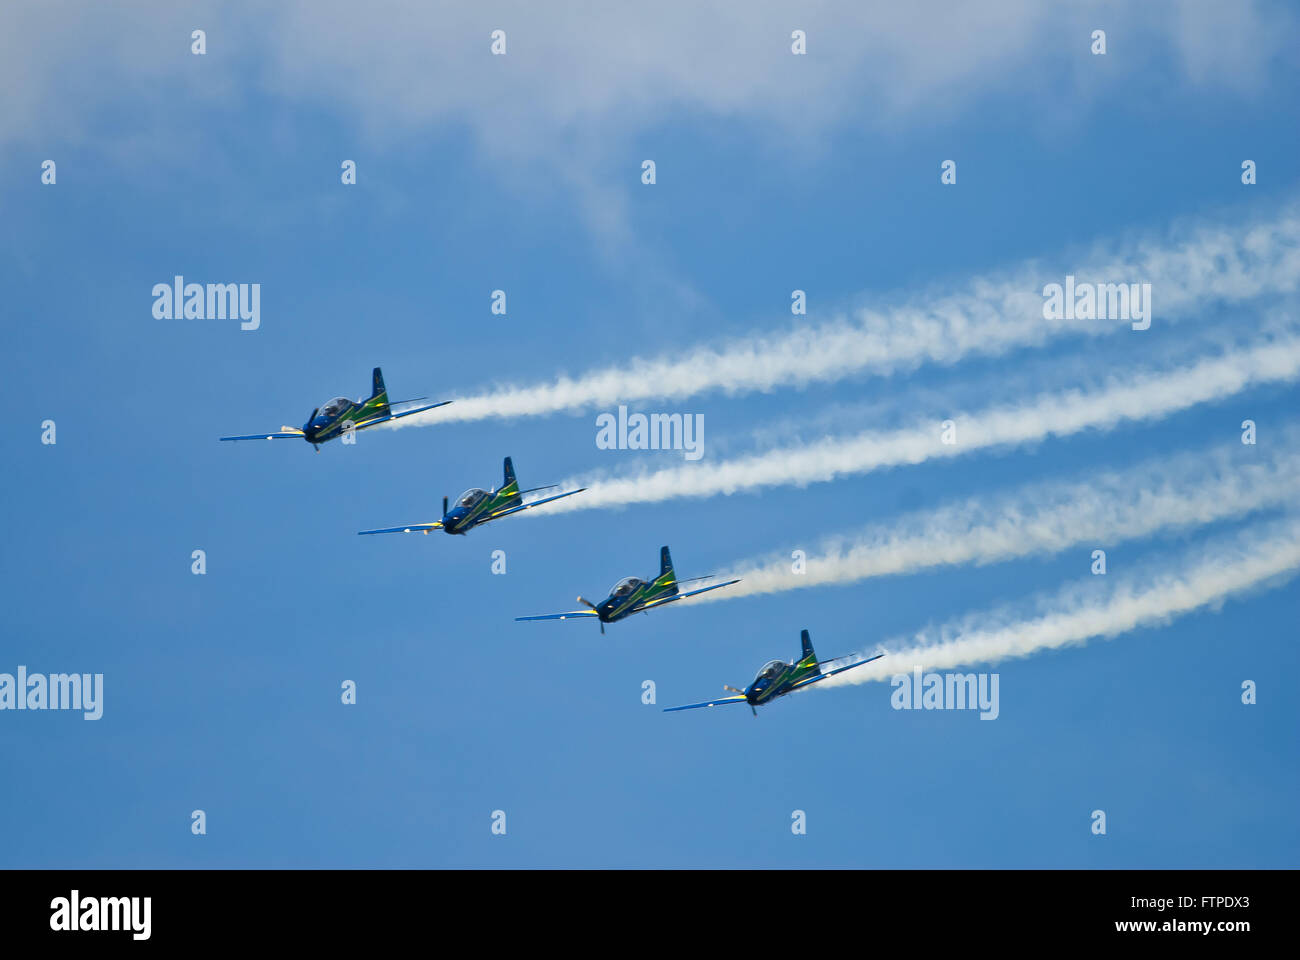 Planes of the Smoke Squadron FAB - Forca Aerea Brasileira Stock Photo